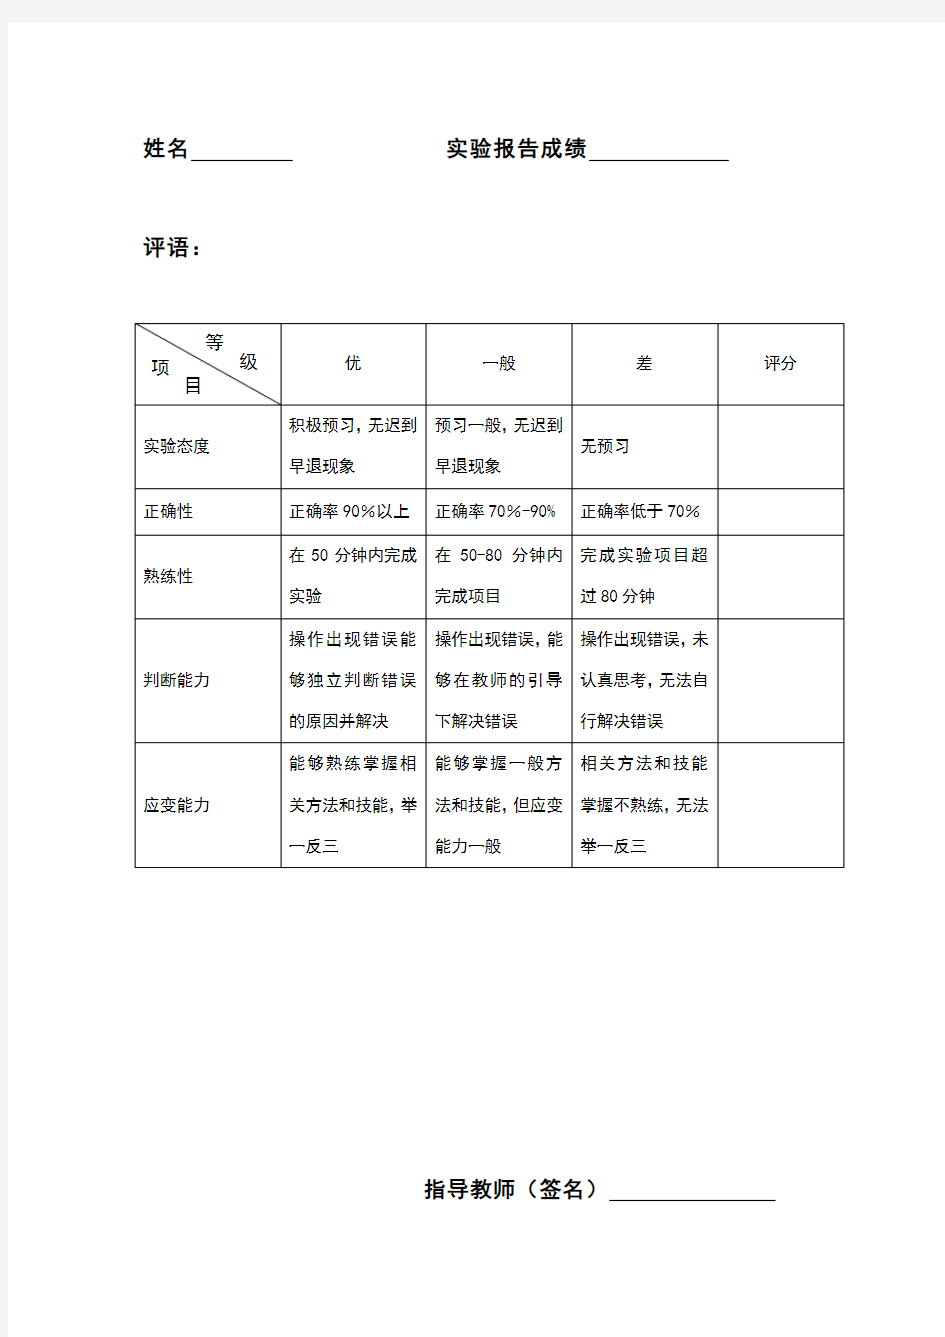 中文数据库的检索实验报告